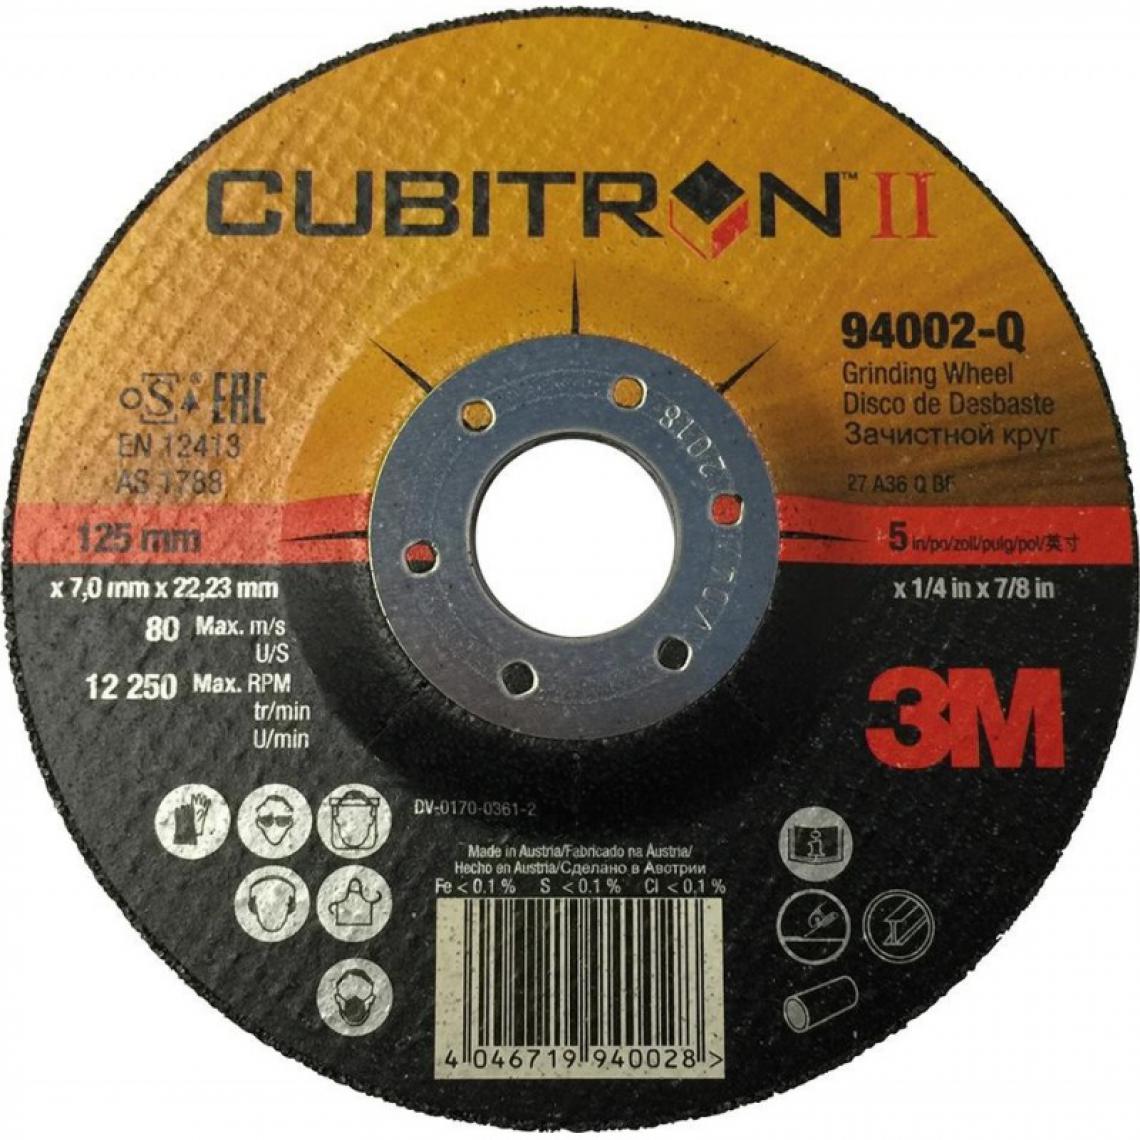 marque generique - Disque à dégrossir Cubitron II G2 125 x 7,0mm 3M - Accessoires meulage